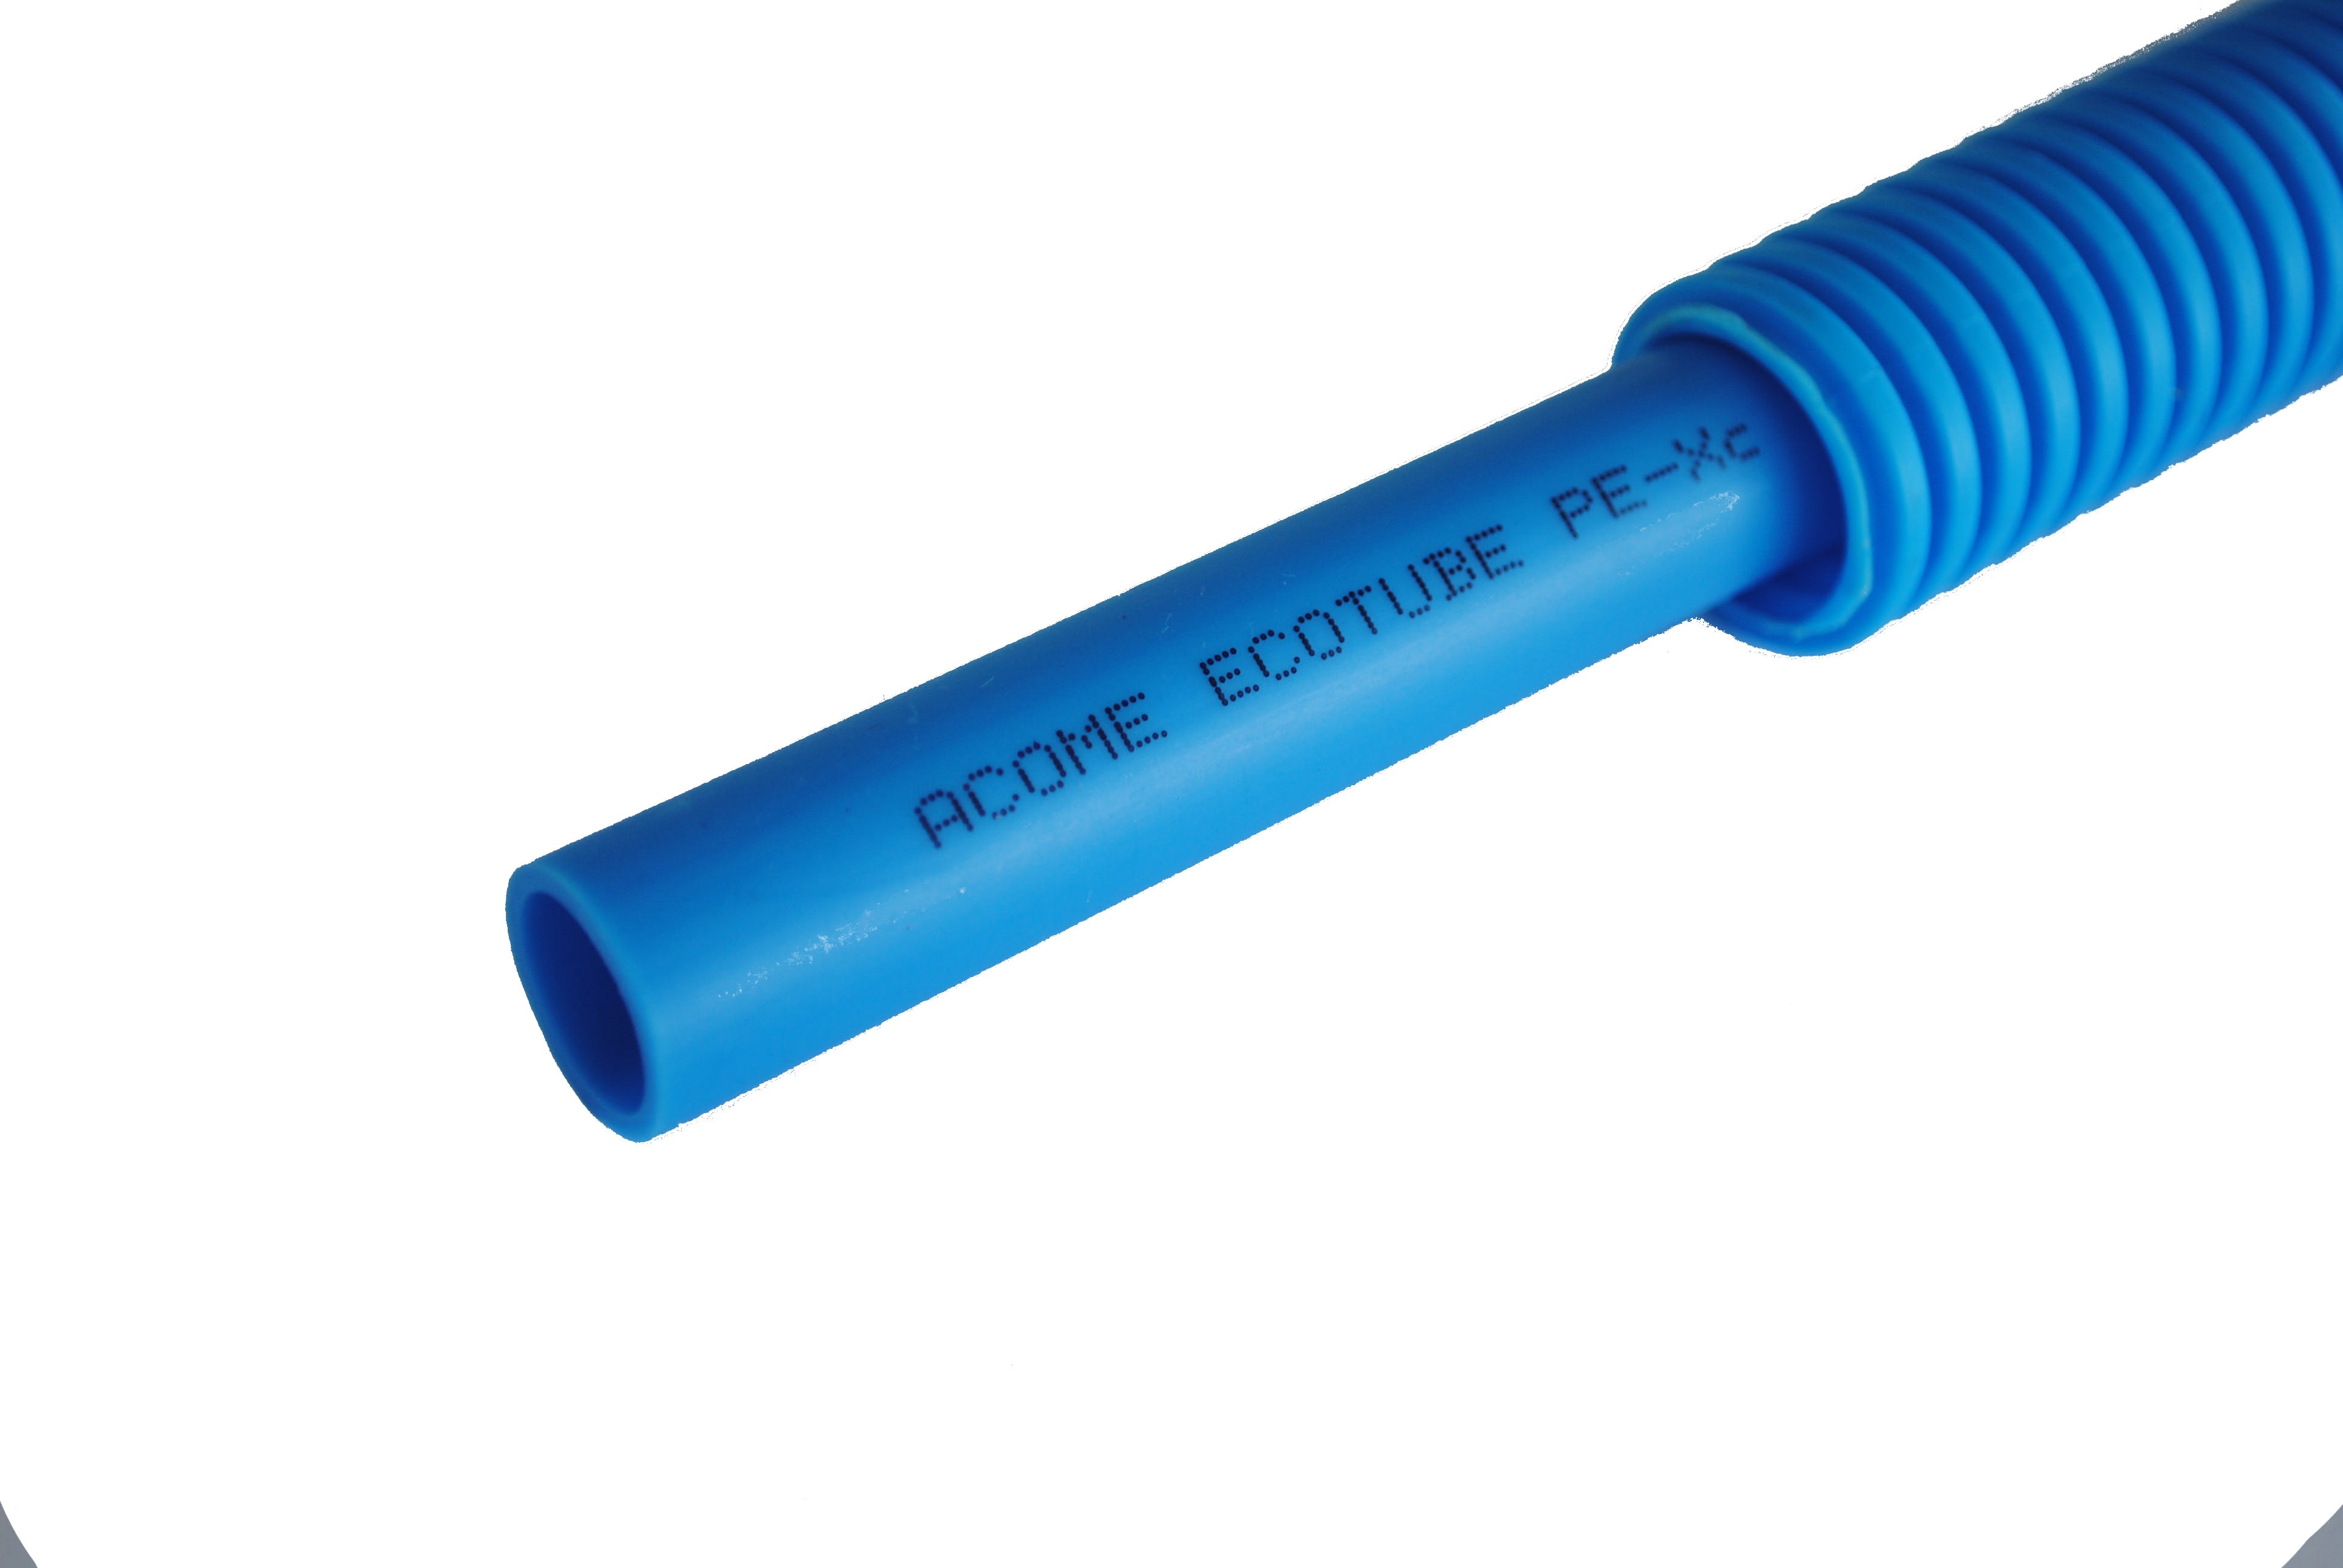 THERMACOME - Tube PER gainé Ecotube bleu DN12 s/g bleue-couronne 50 m-Réticulation PEXc